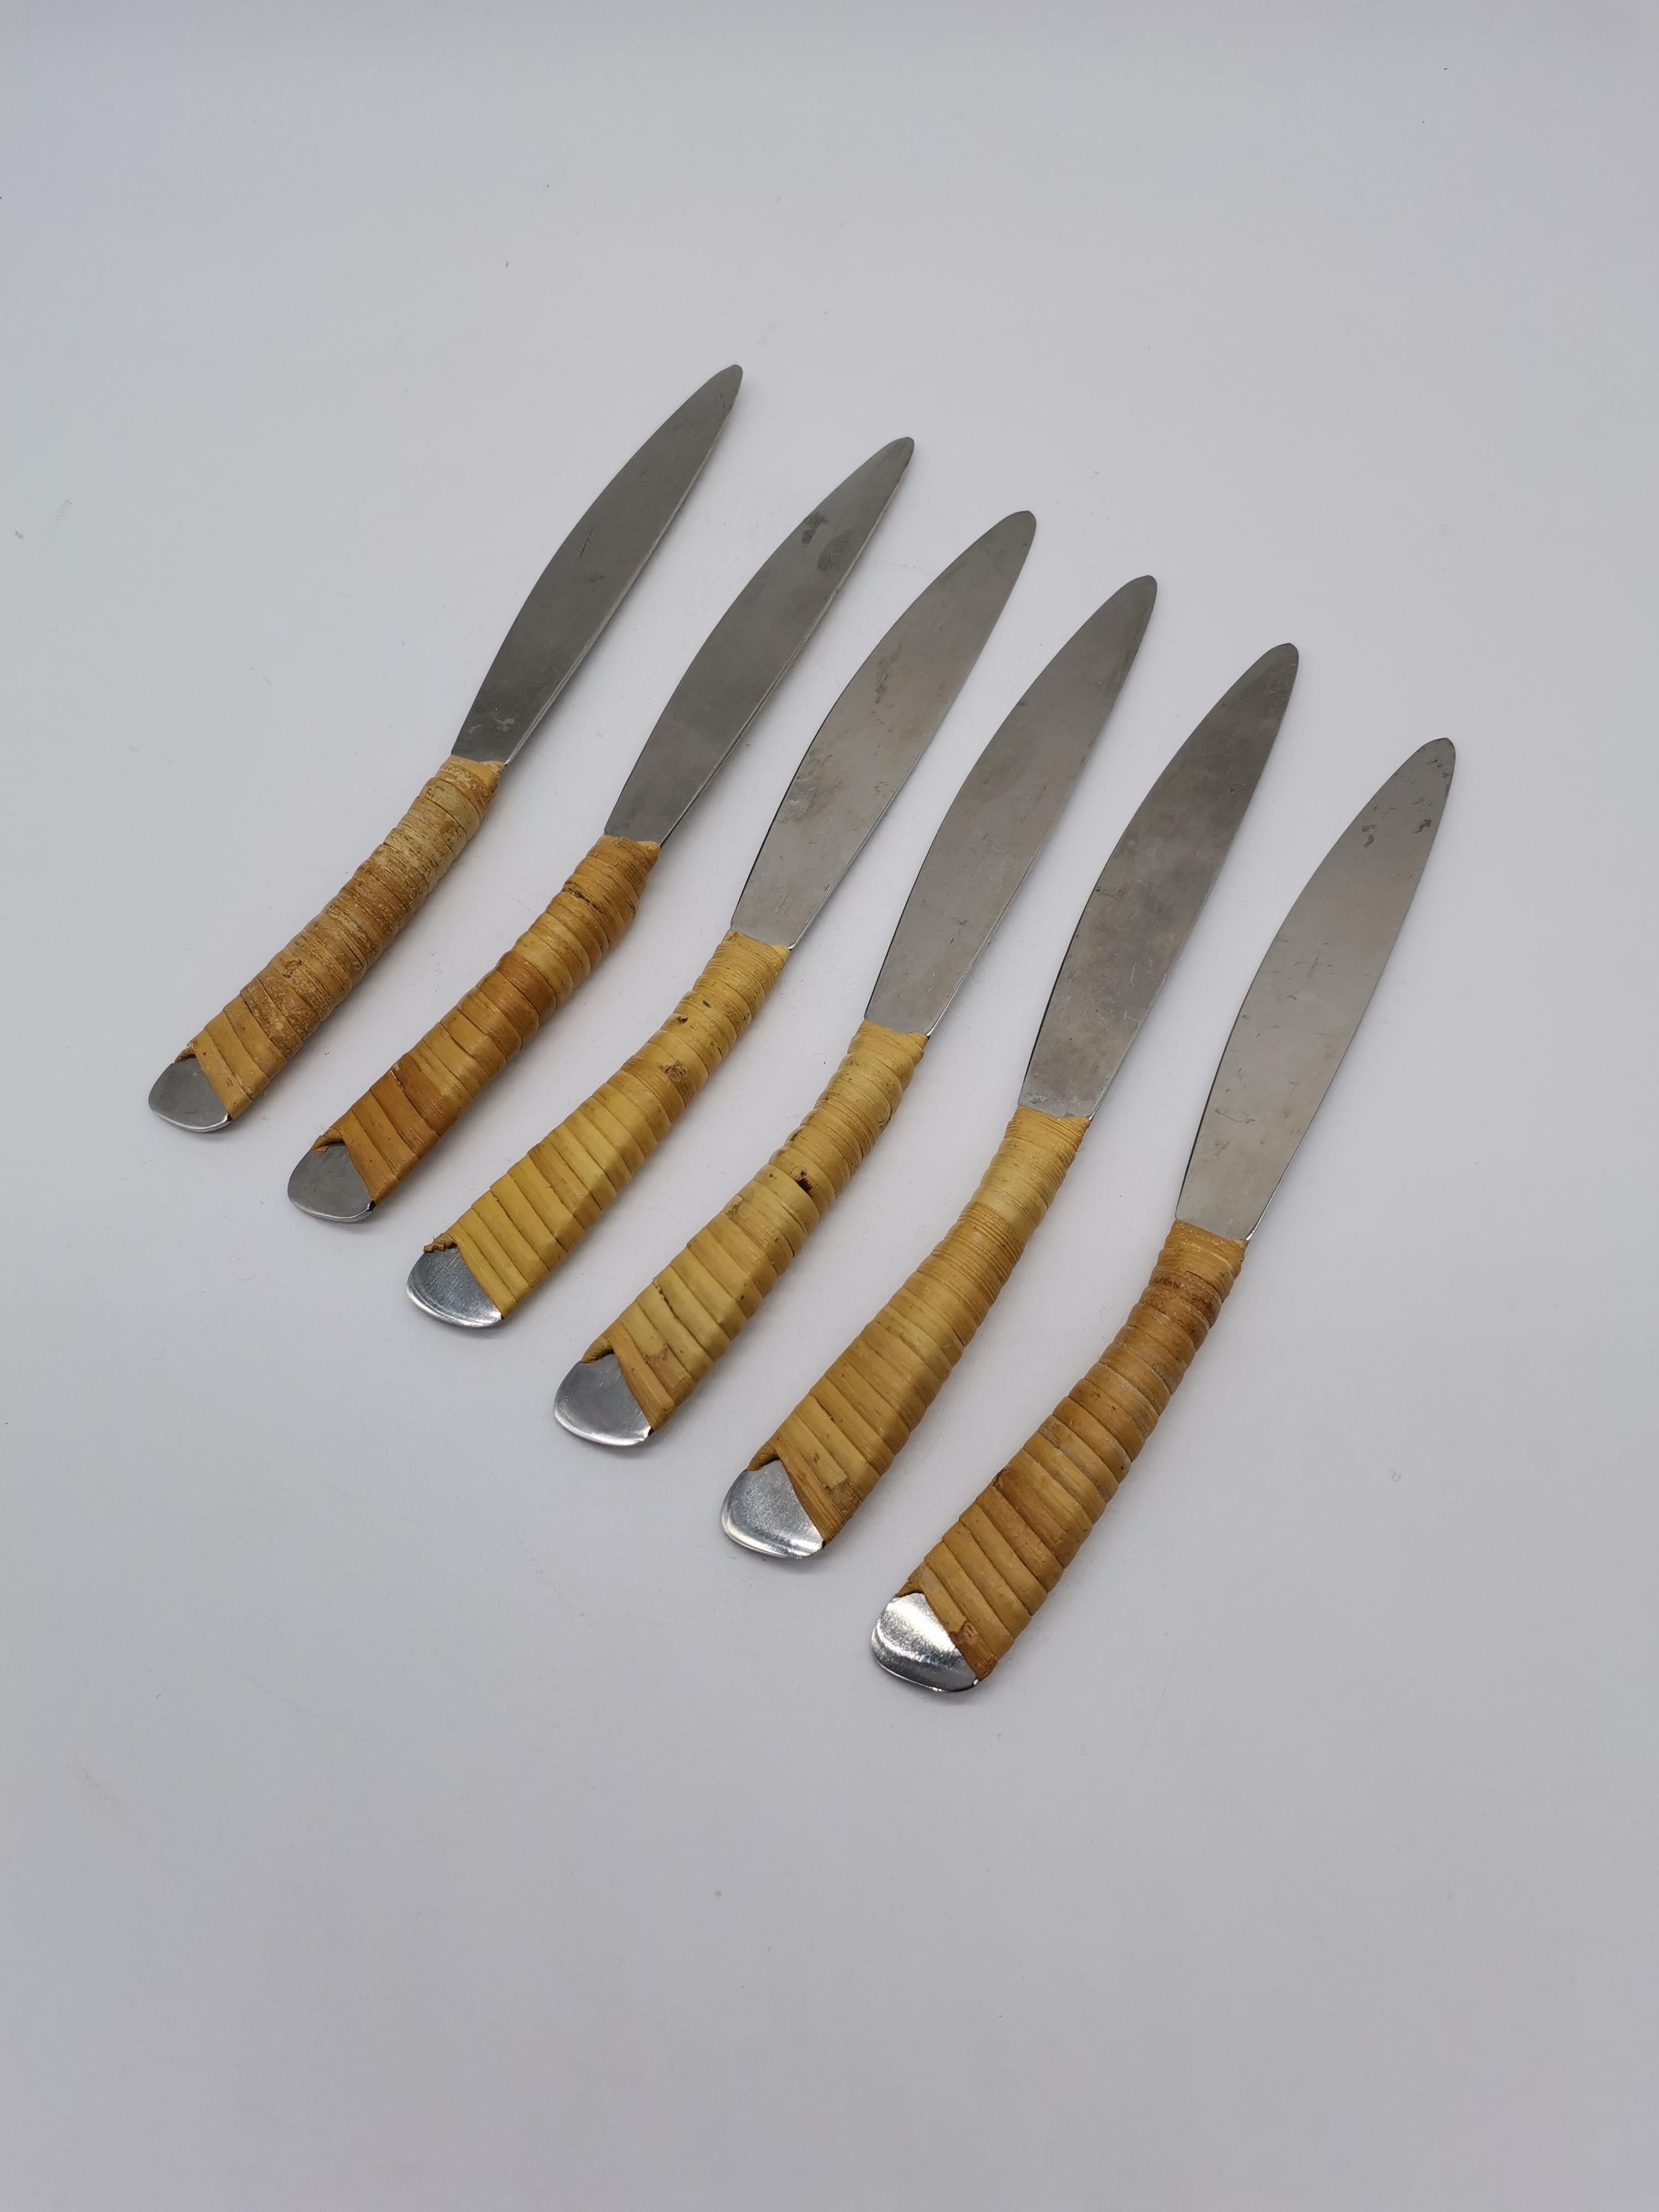 Six couteaux fabriqués par Carl Auböck pour Amboss.